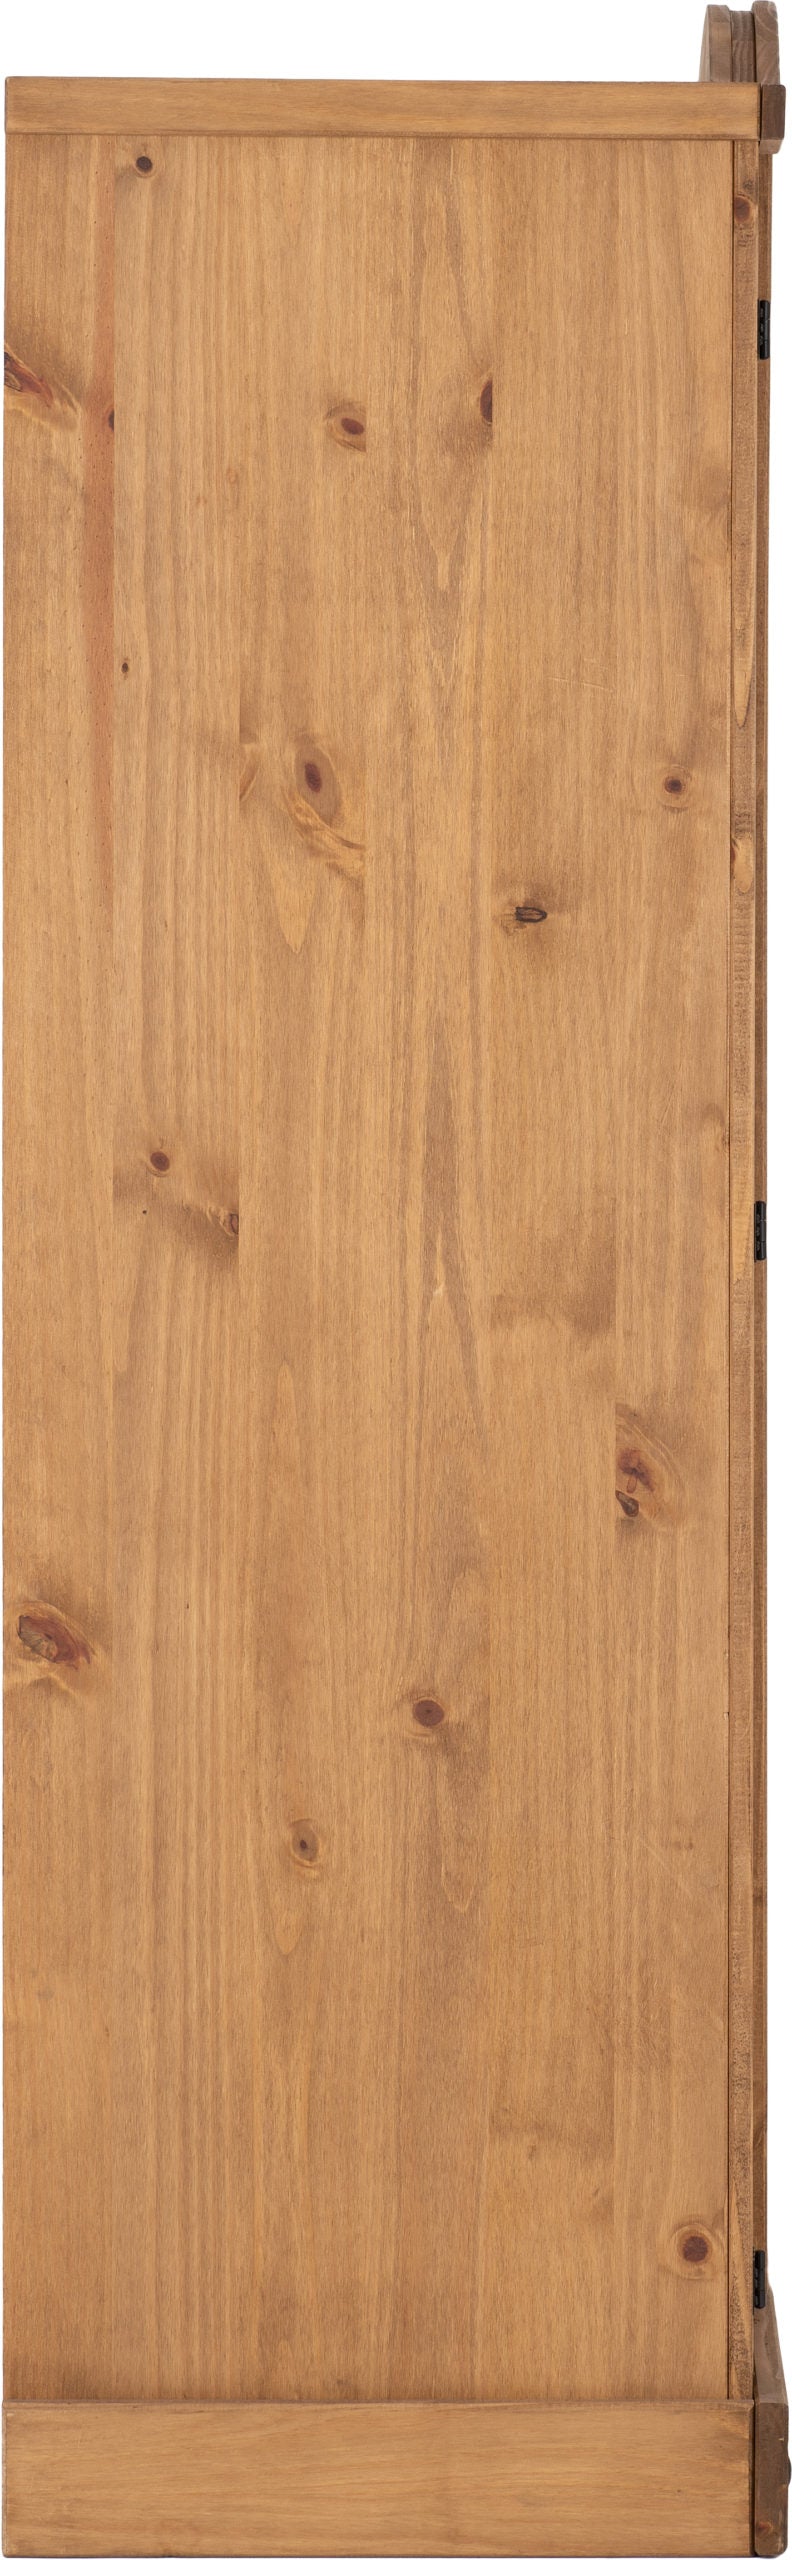 Corona 4 Door Wardrobe - Distressed Waxed Pine